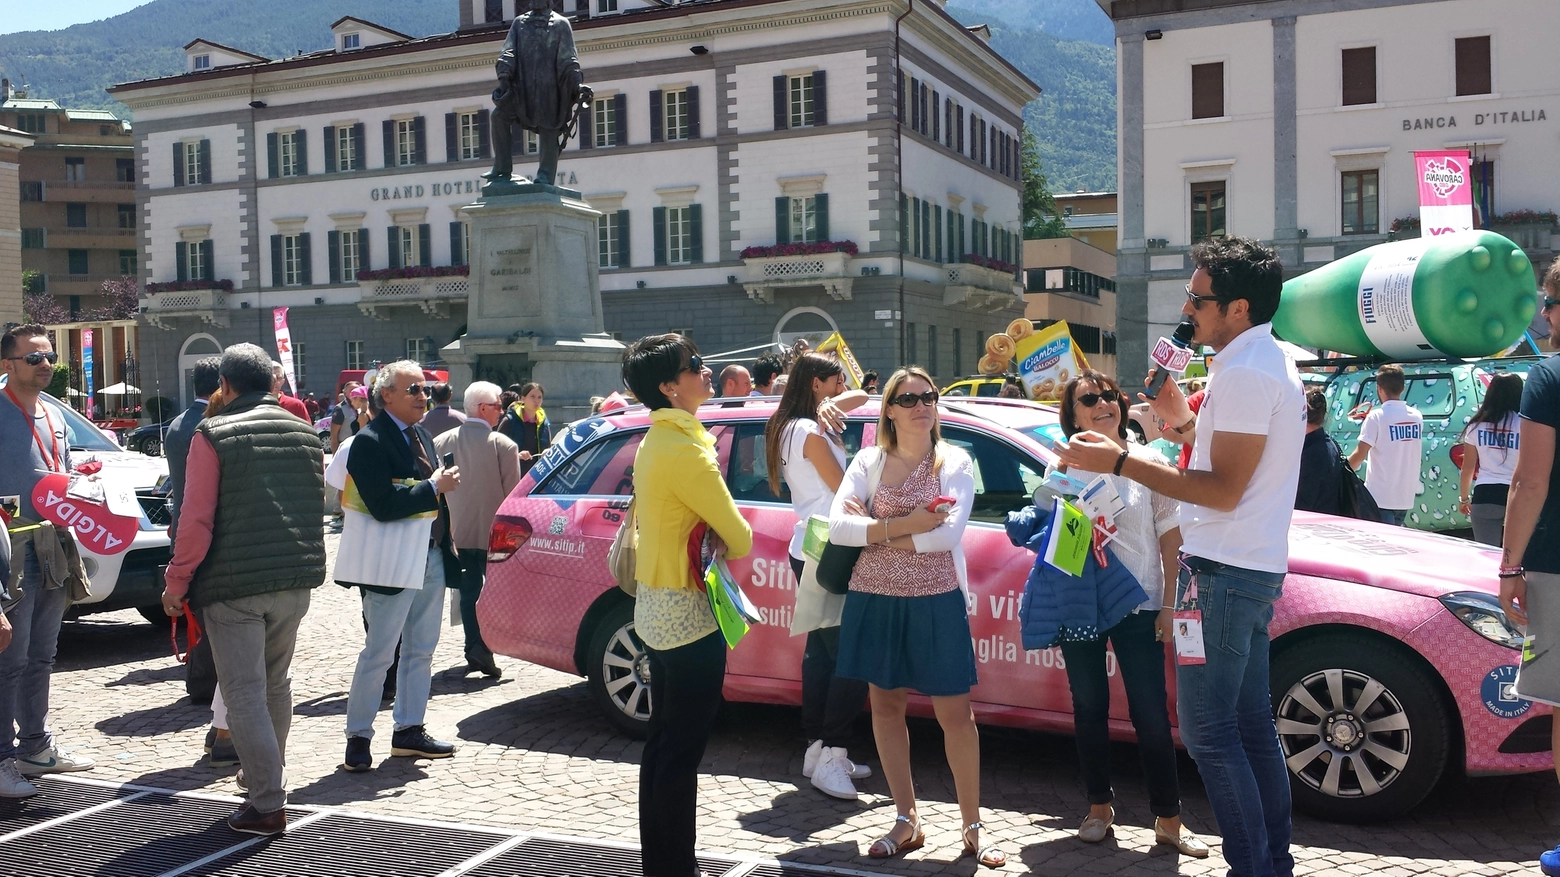 La Carovana del Giro in piazza Garibaldi (National Press)